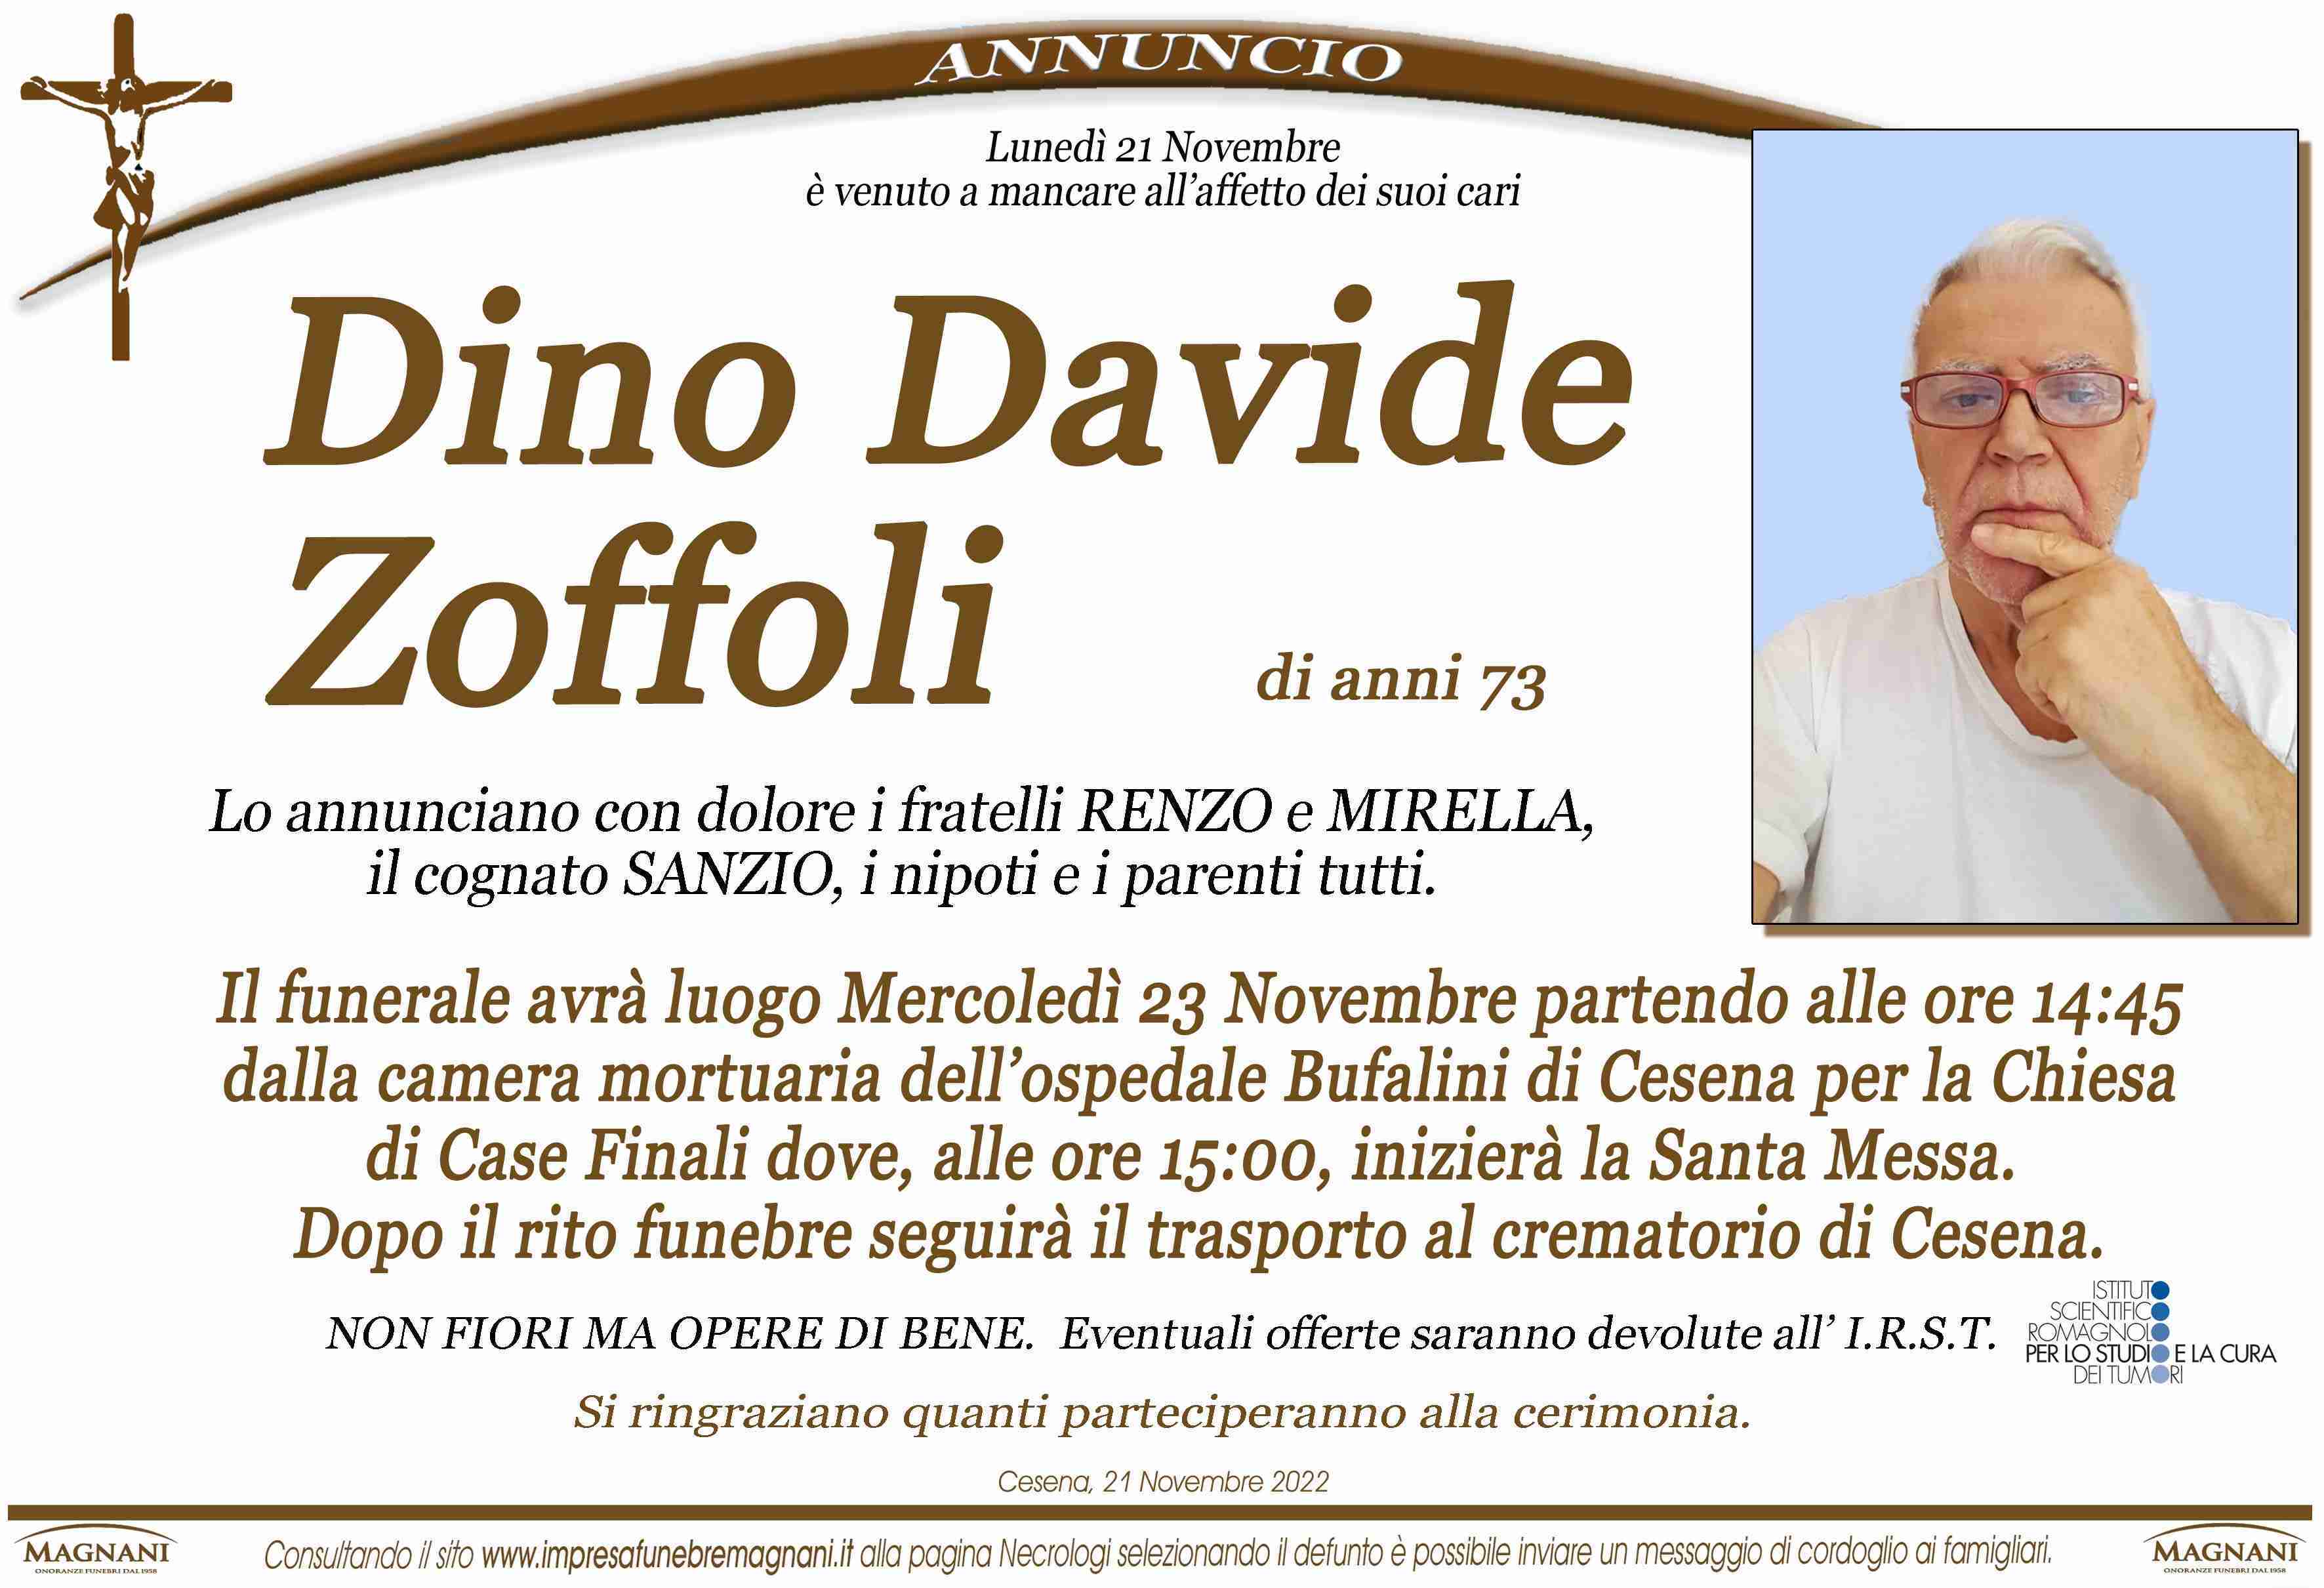 Dino Davide Zoffoli